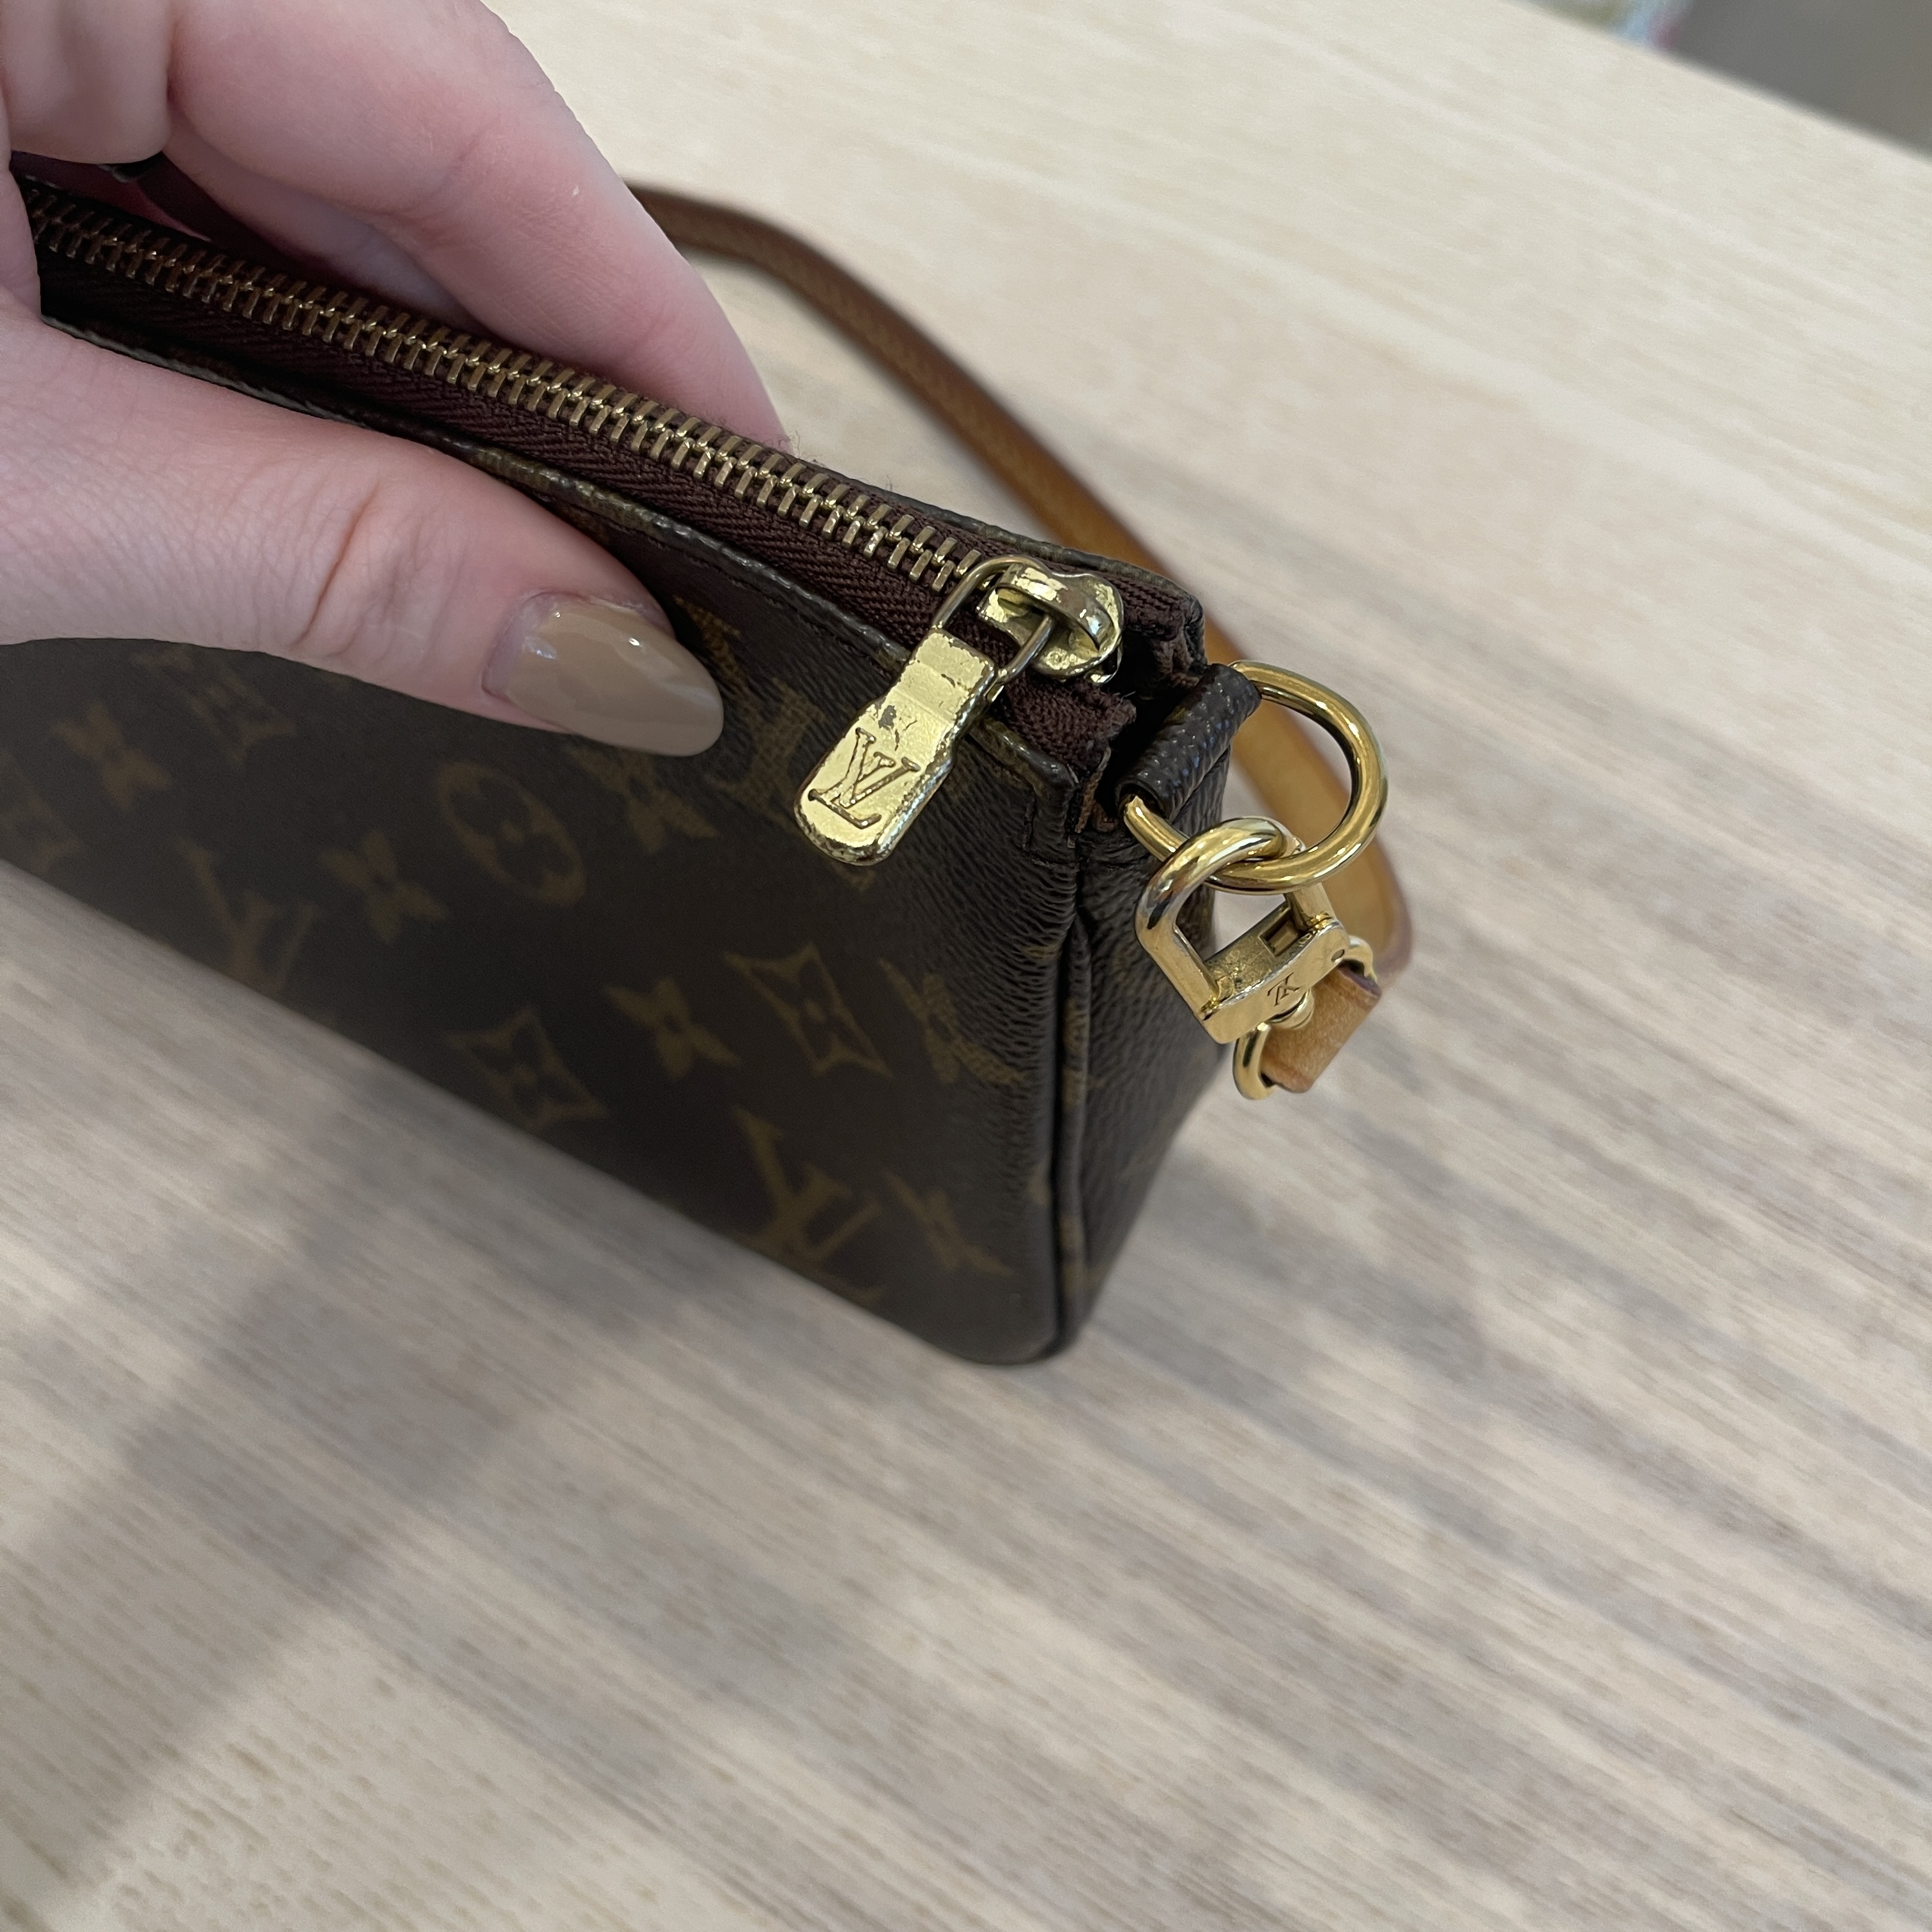 Shop Louis Vuitton MONOGRAM Pochette accessoires (M40712) by inthewall